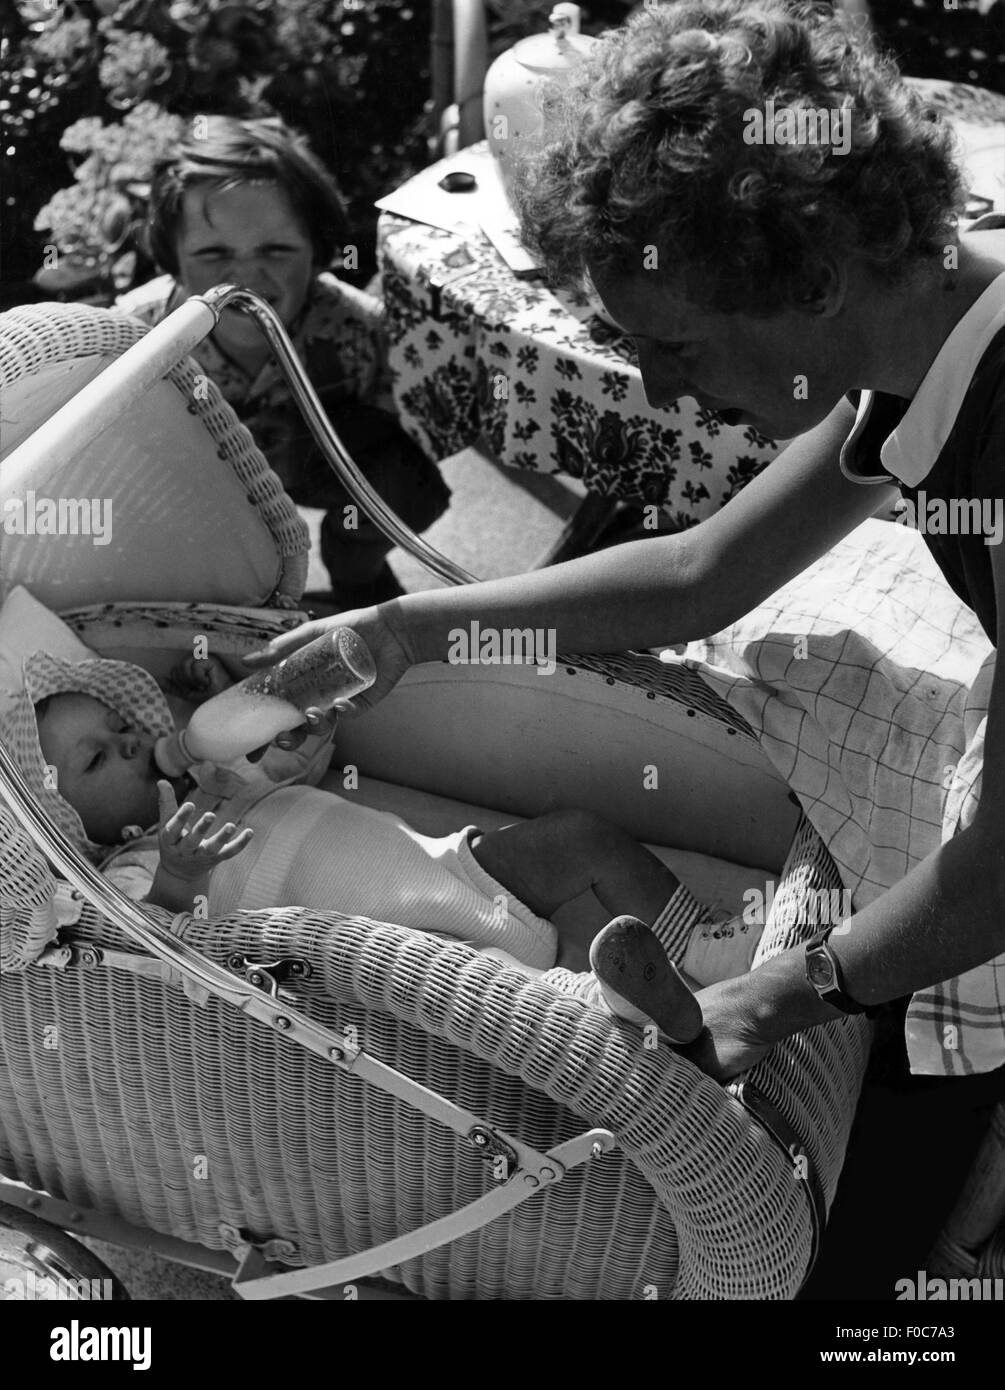 Persone, bambini / bambini, bambini, bambini, bambini che vengono nutriti da sua madre, anni 50, diritti aggiuntivi-clearences-non disponibile Foto Stock